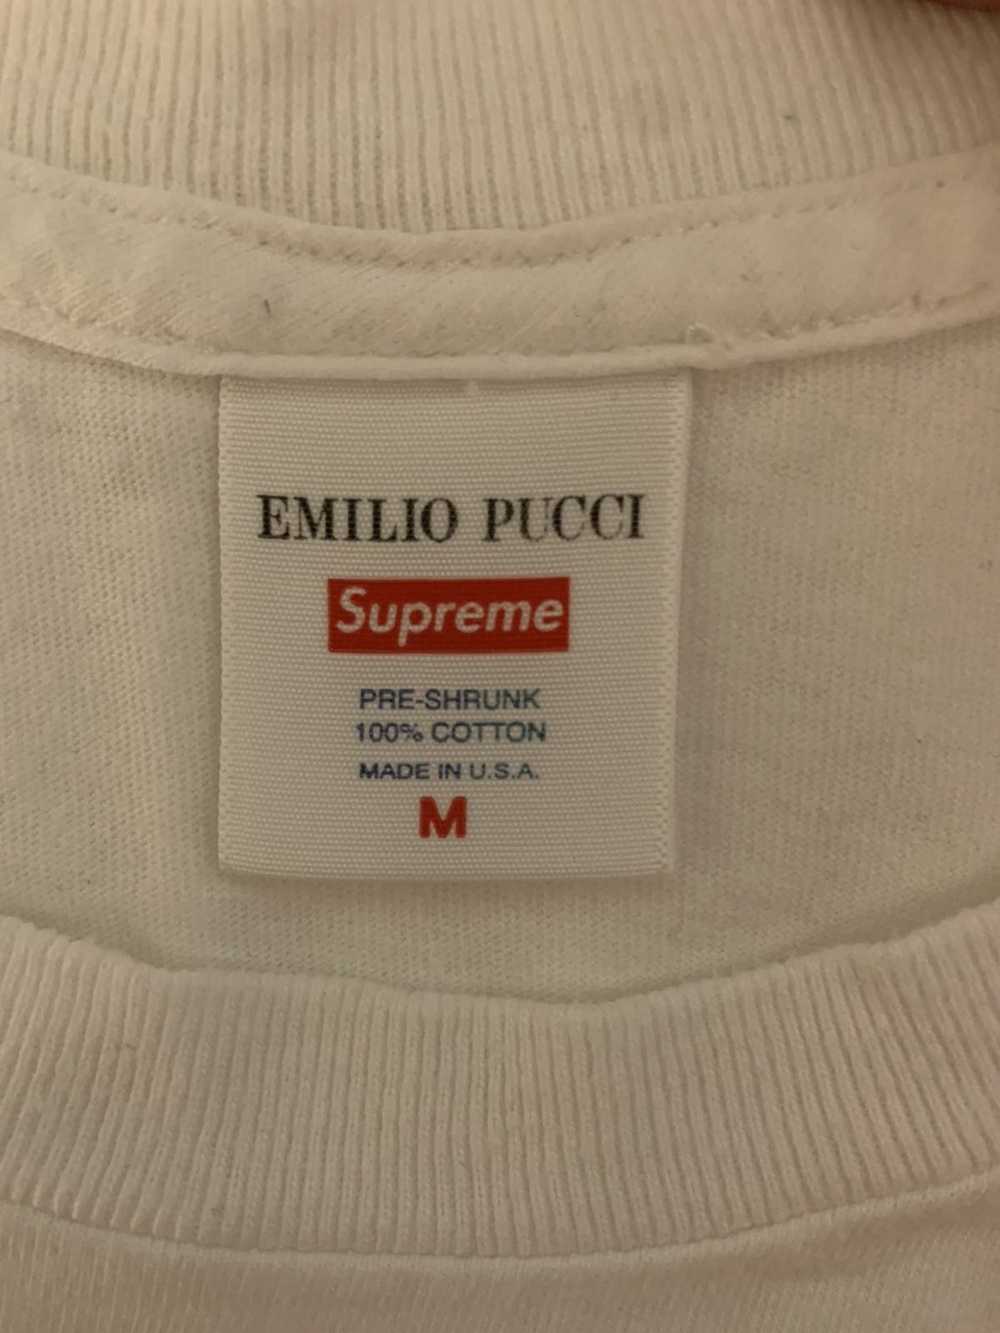 Supreme Supreme x Emilio Pucci T-shirt - image 2